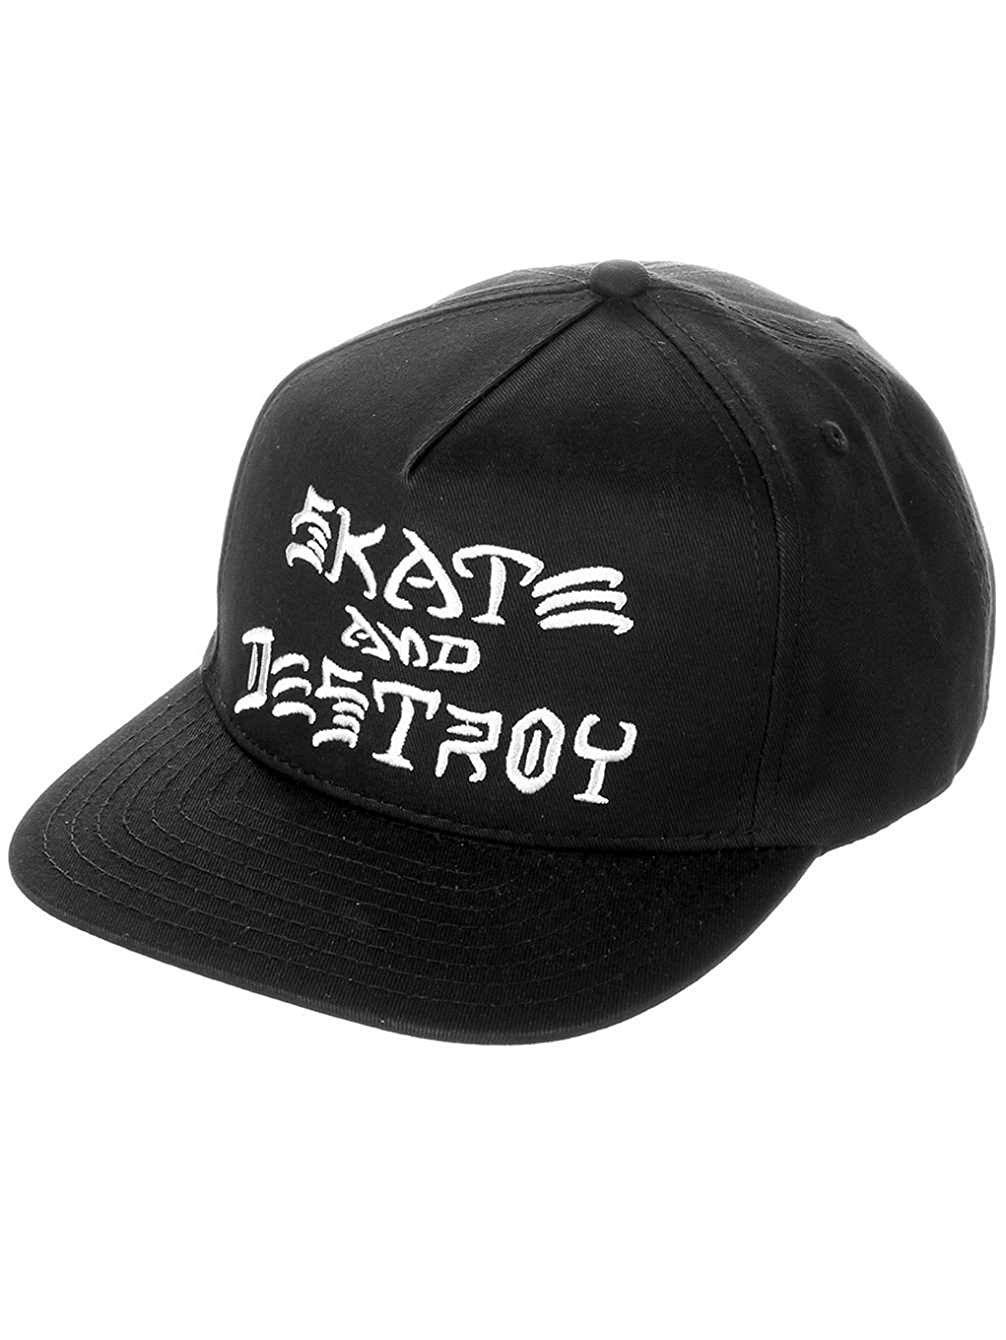 Thrasher Skate and Destroy Logo - Thrasher Skate and Destroy Adjustable Skateboard Hat Cap Black, One